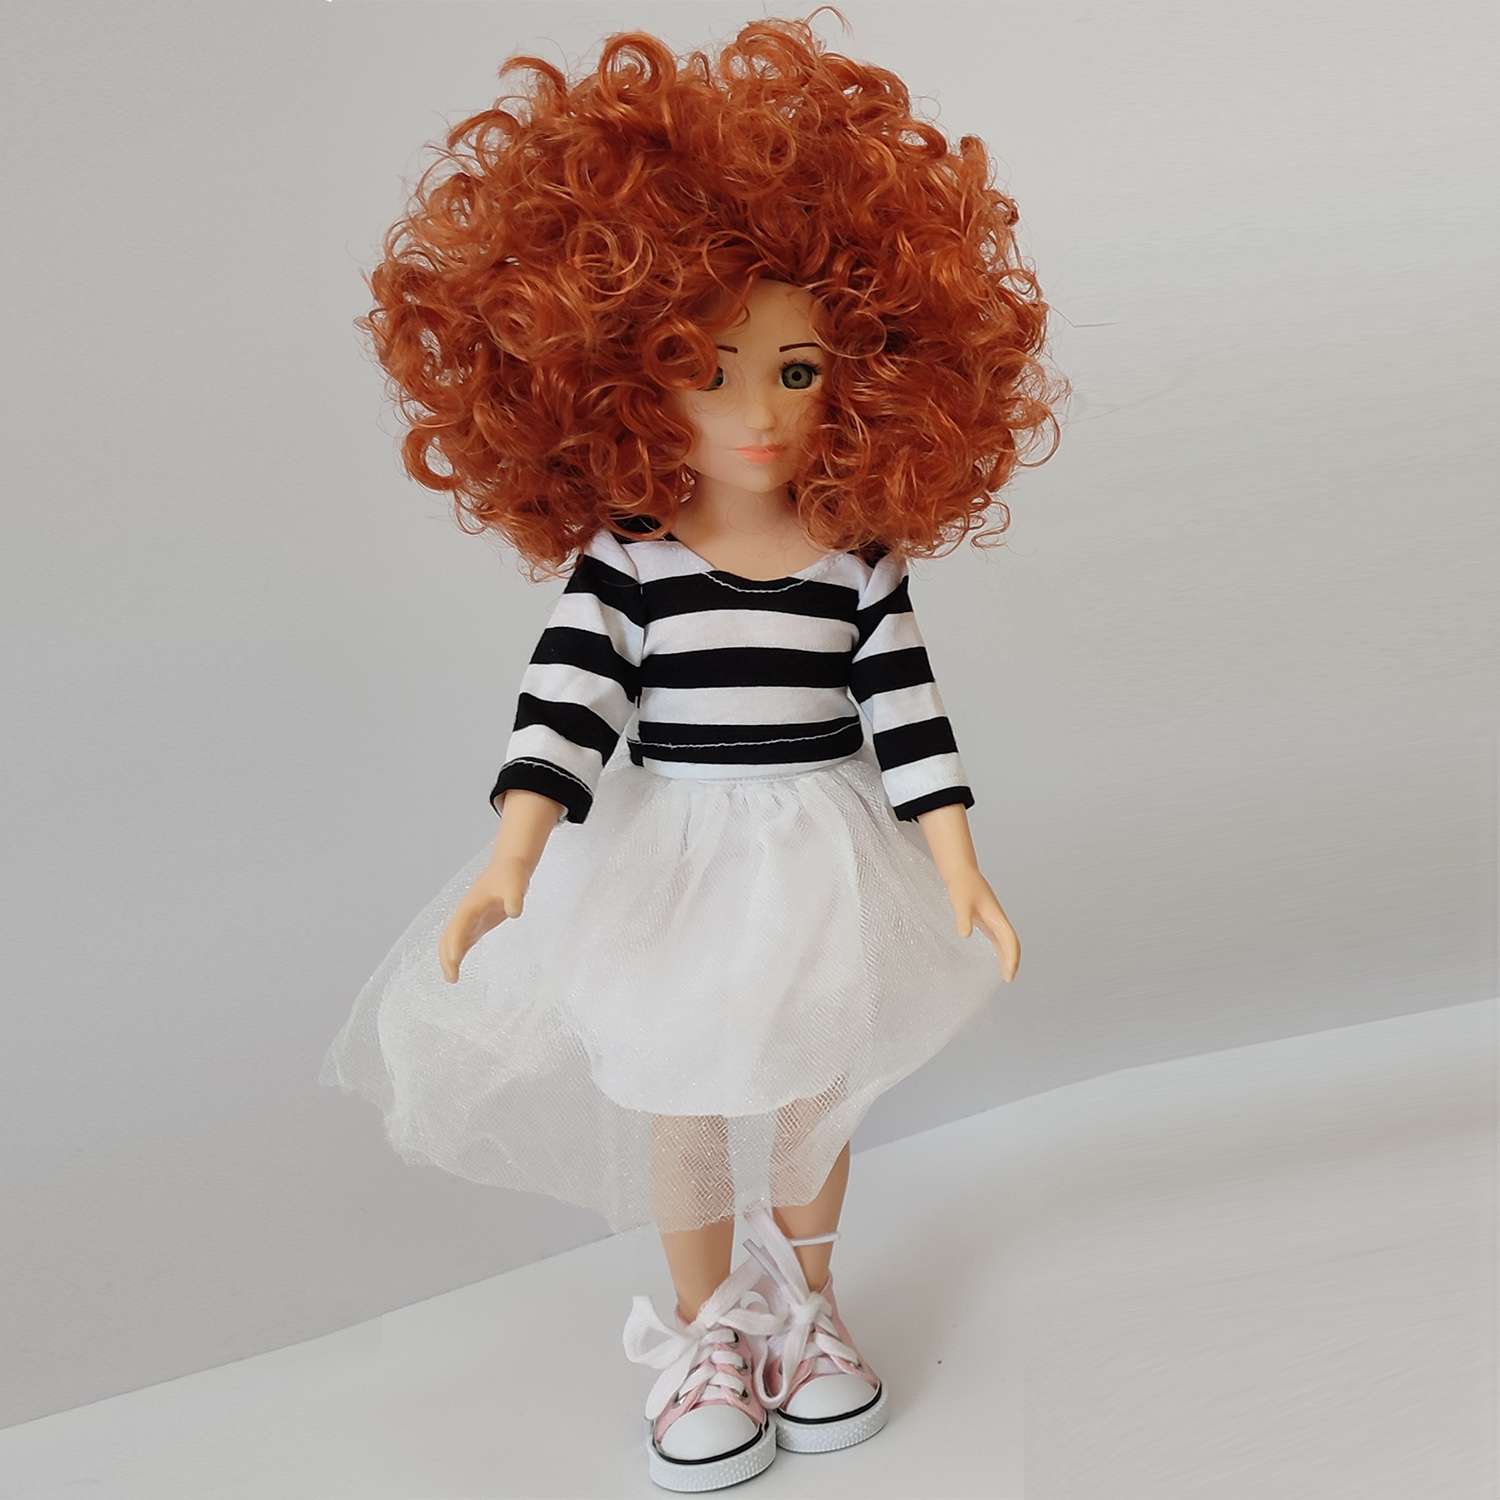 Кукла виниловая 32см TRINITY Анфиса юбка белая c полосатой футболкой 14825 - фото 2